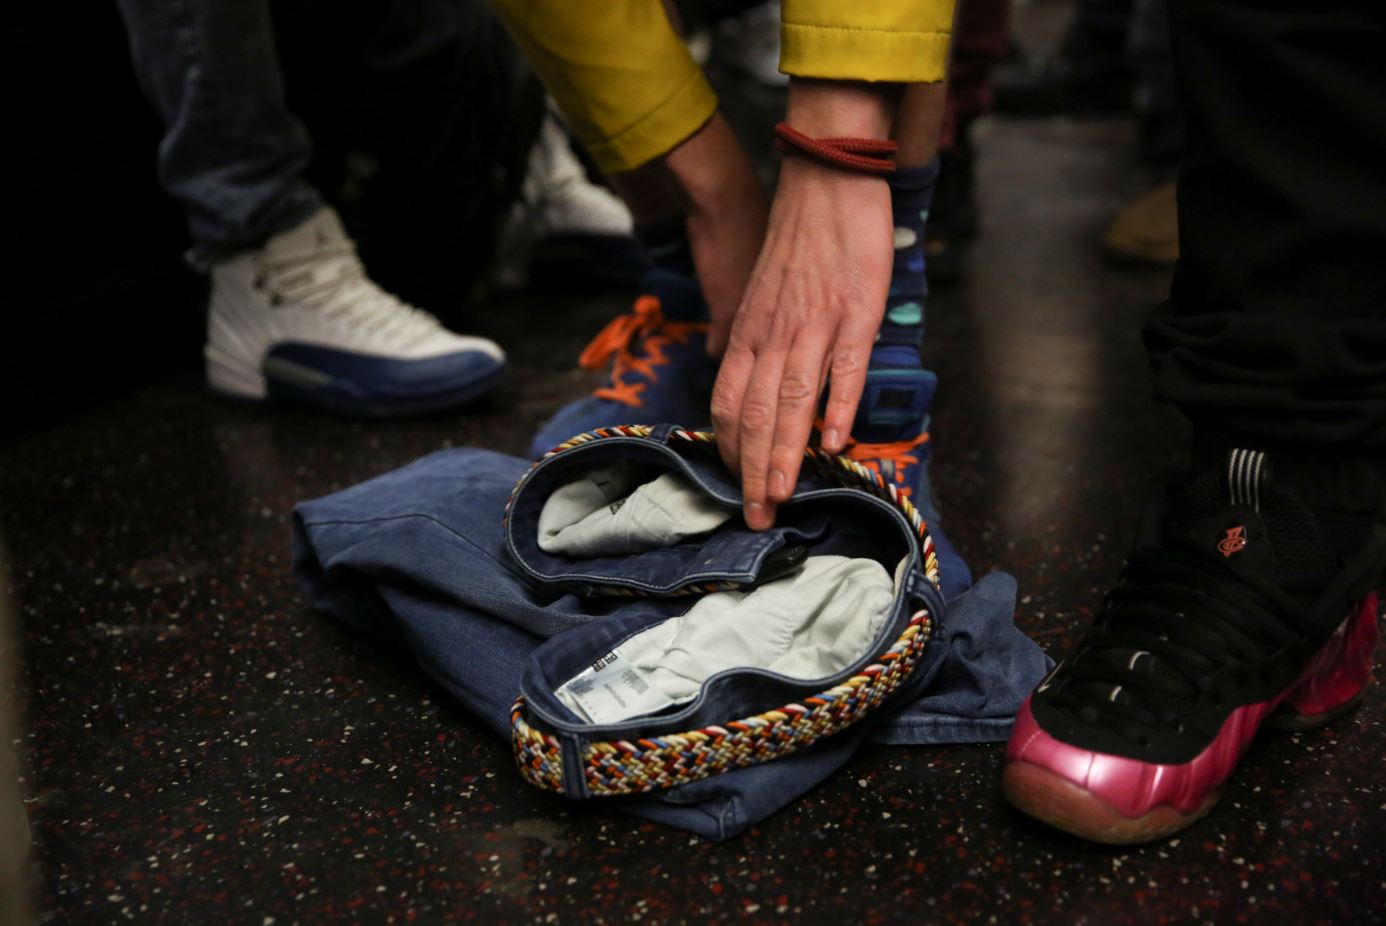 Una persona remueve sus pantalones durante el viaje del metro que lo llevará a Union Square, el punto de reunión final del evento (Reuters)